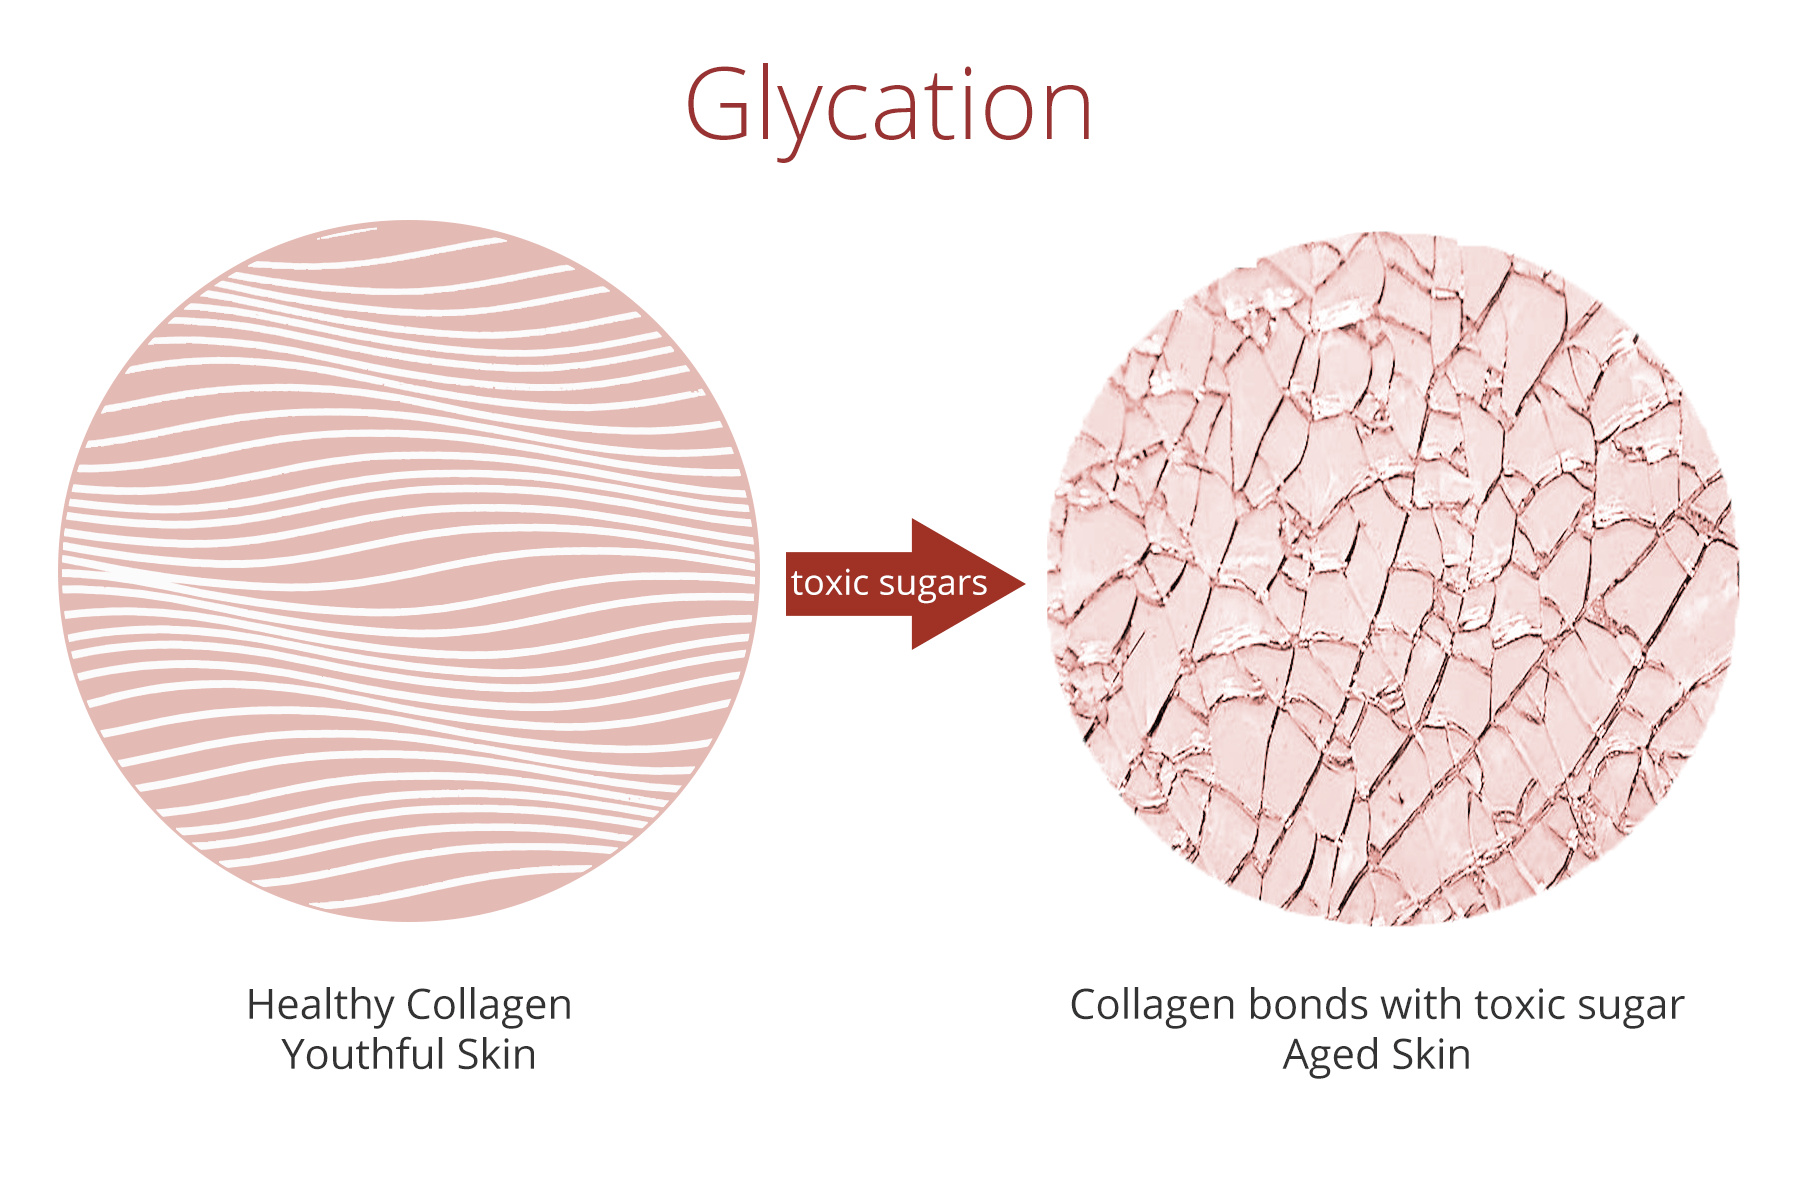 quá trình glycation phá hủy cấu trúc collagen